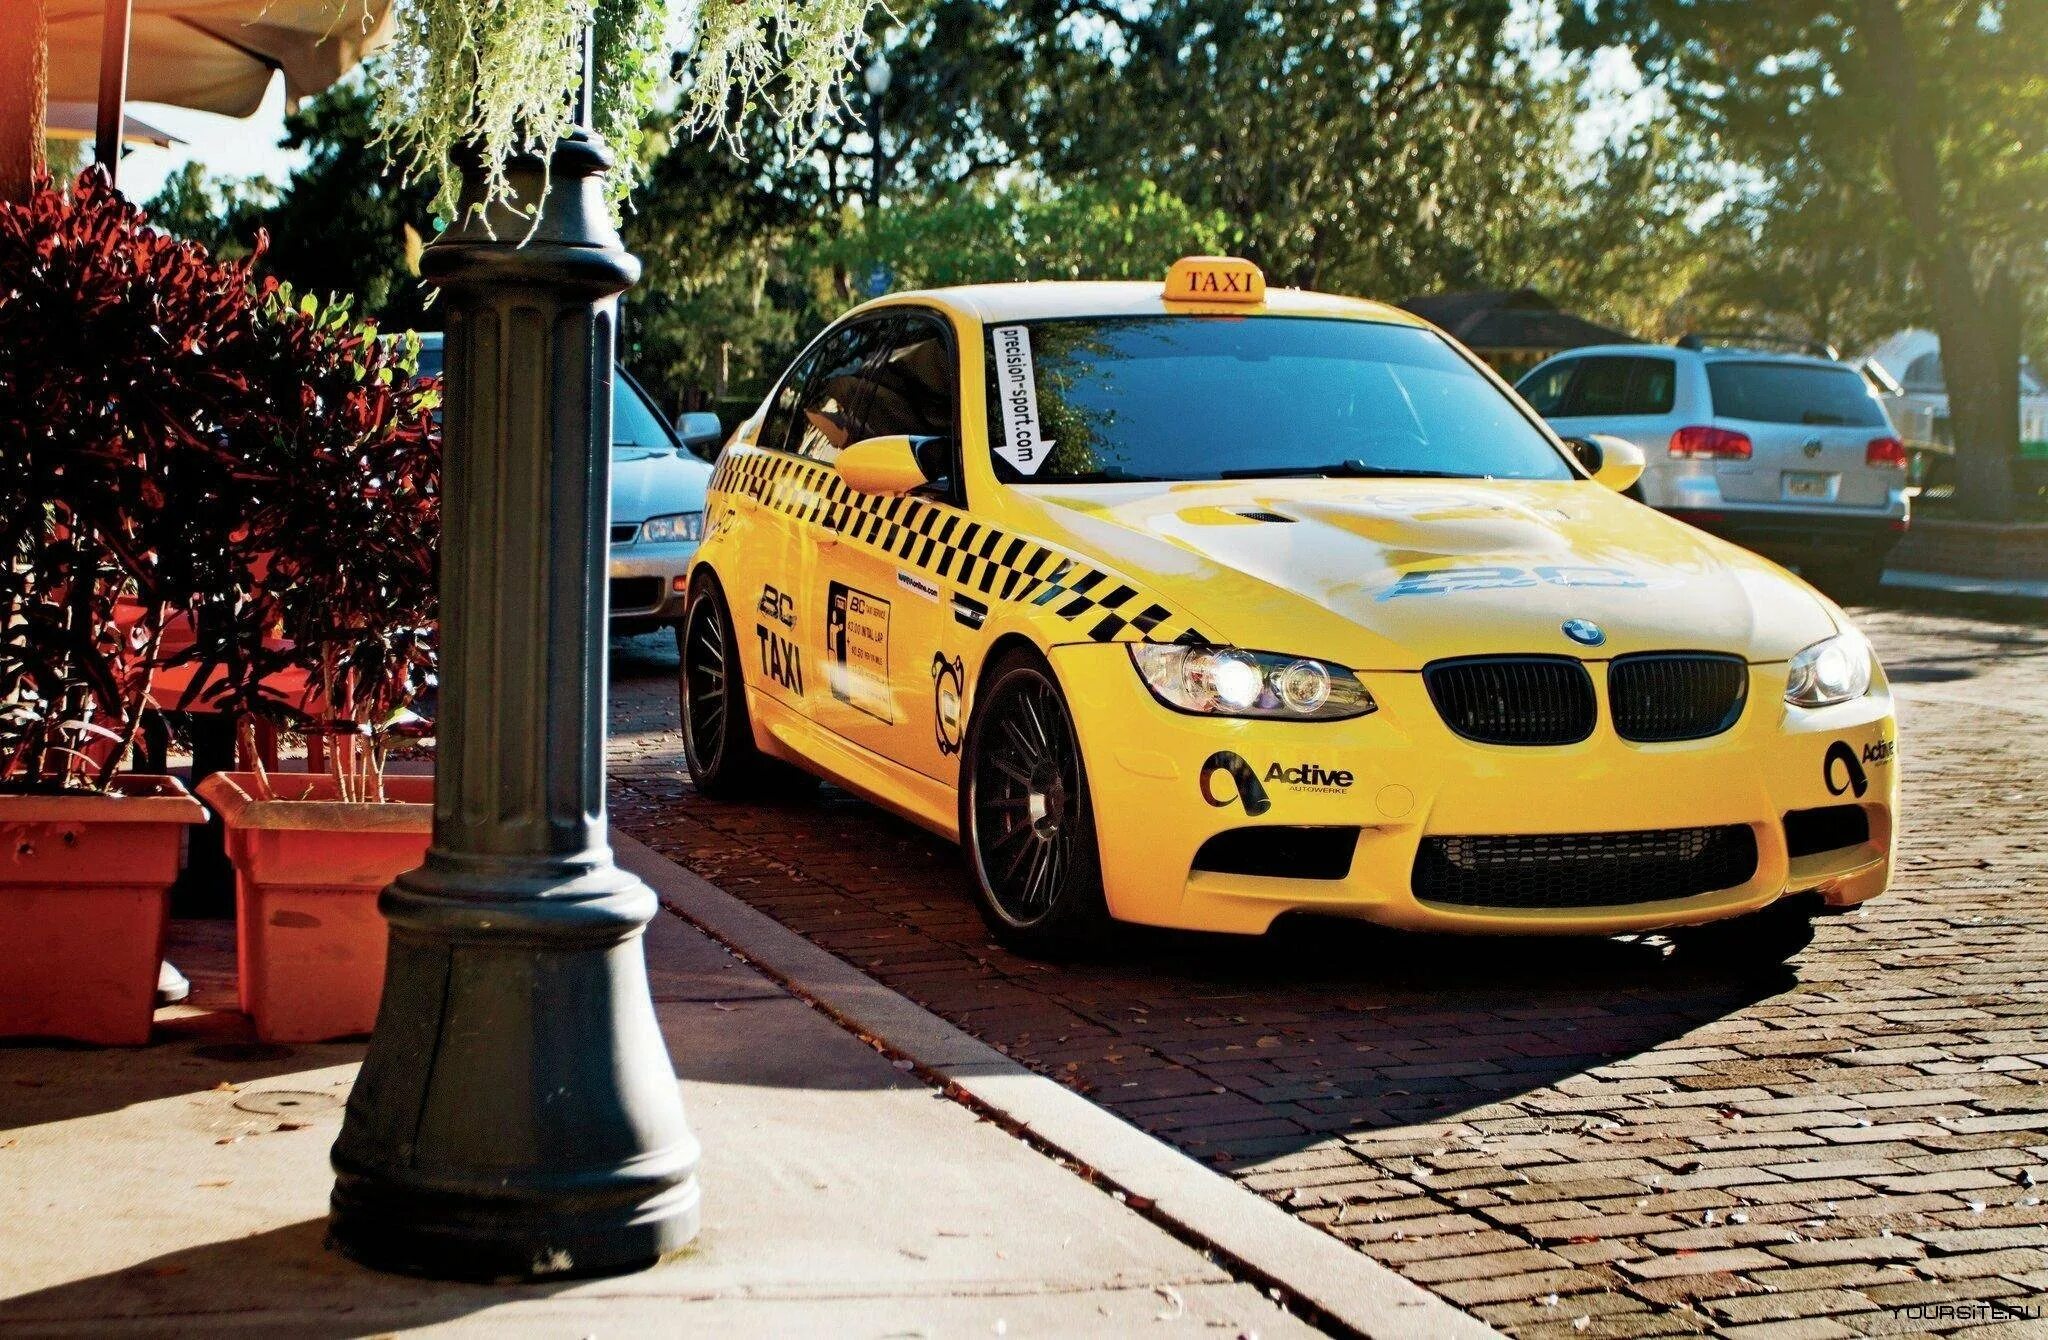 Фото такси машин. Такси Ламборджини. Машина "такси". Красивые машины такси. Машина такси БМВ.